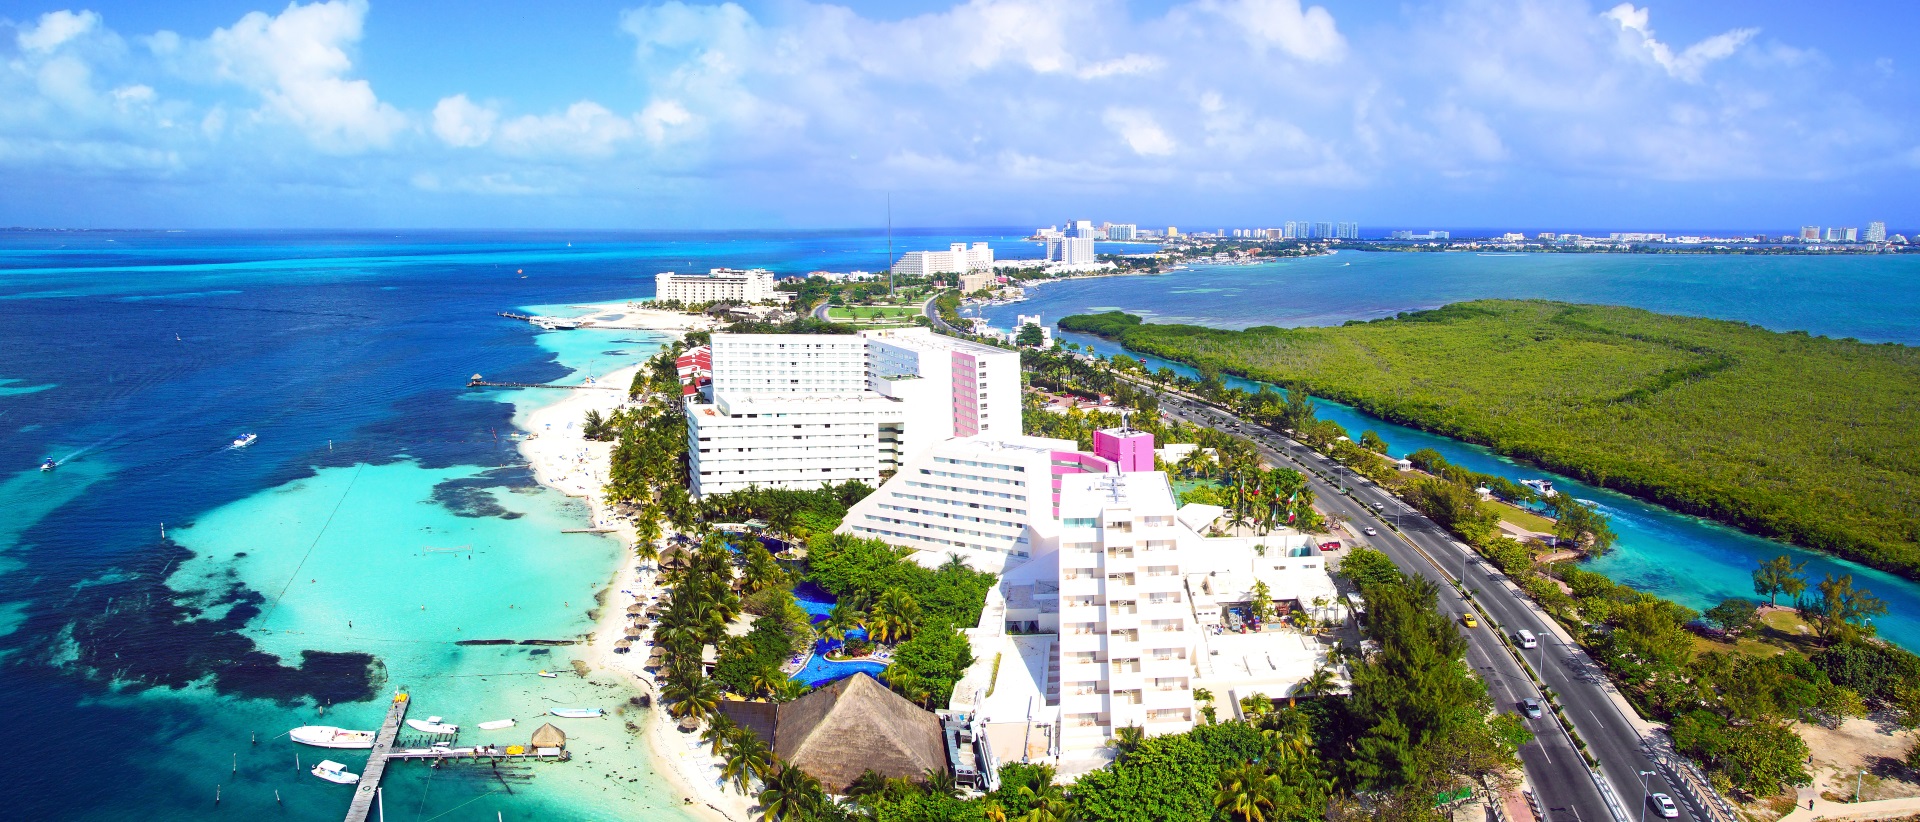 Hotelanlagen in Cancun